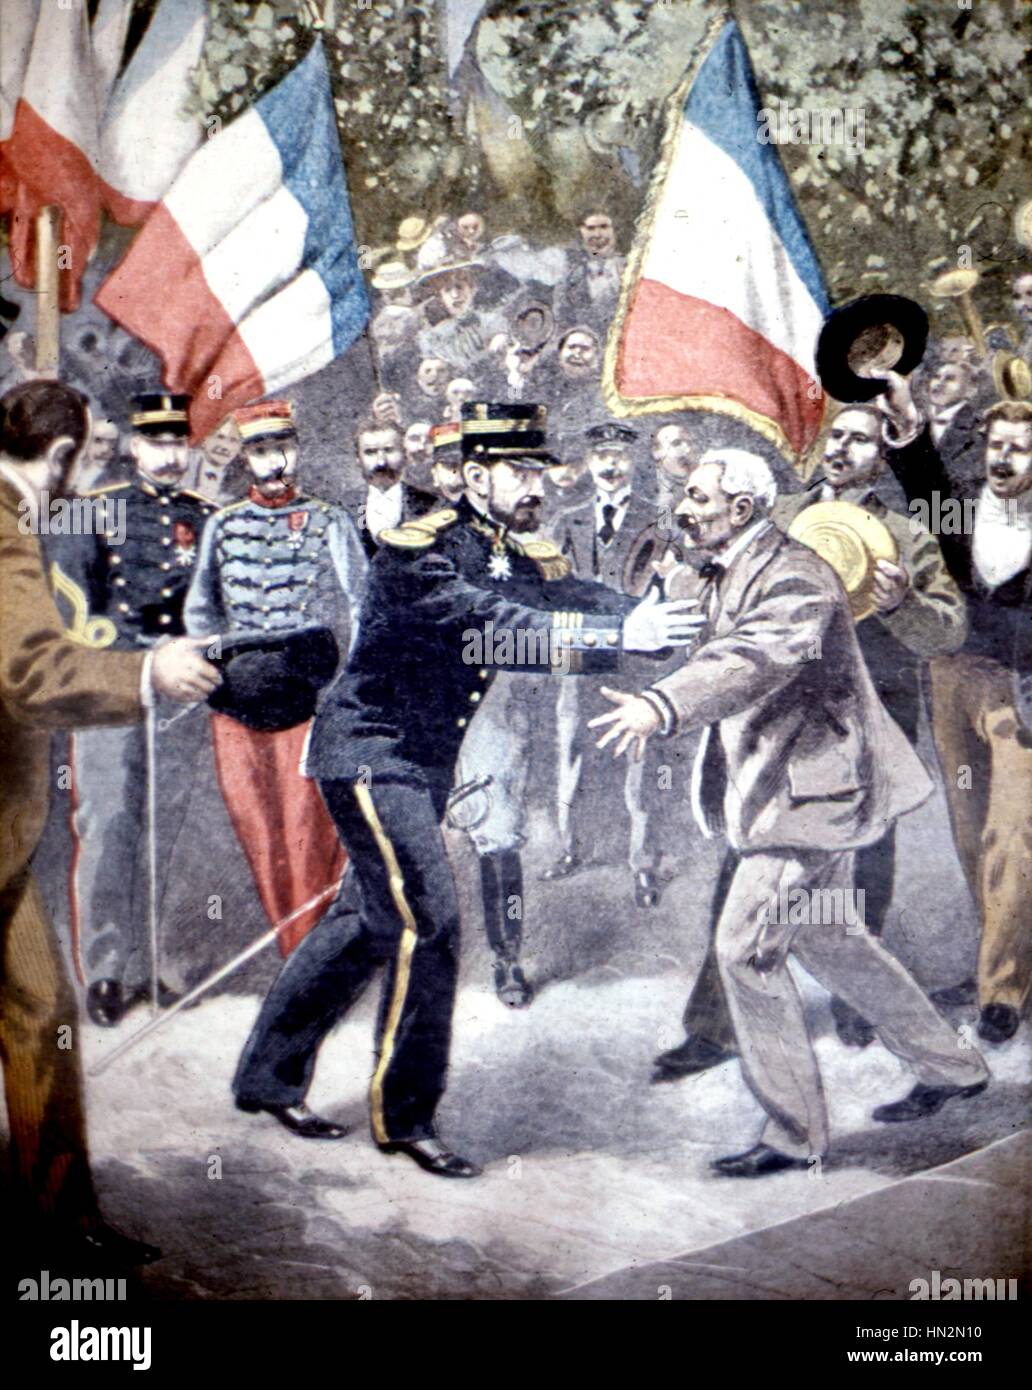 Ein Thoissey (Frankreich) seinen Heimatort, Französisch Major Marchand, der Held von sénégalais, vereint mit seinem Vater, 1899 Frankreich - Kolonisation Stockfoto